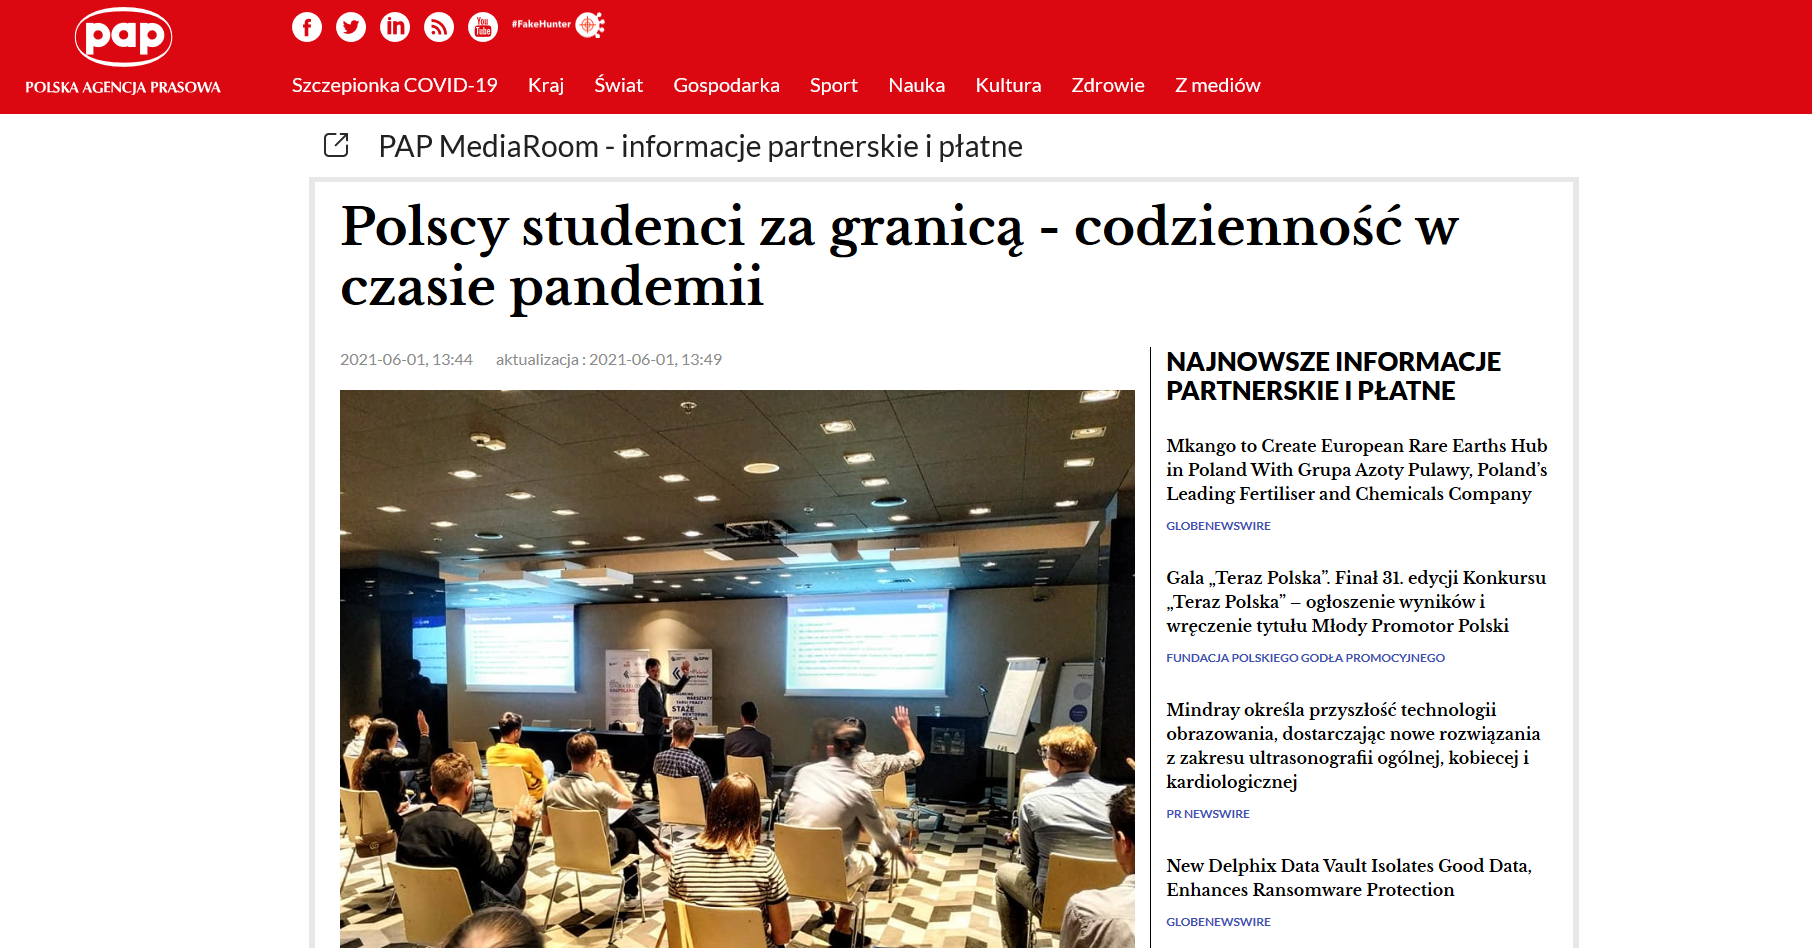 PAP Polscy studenci za granicą - codzienność w dobie pandemii